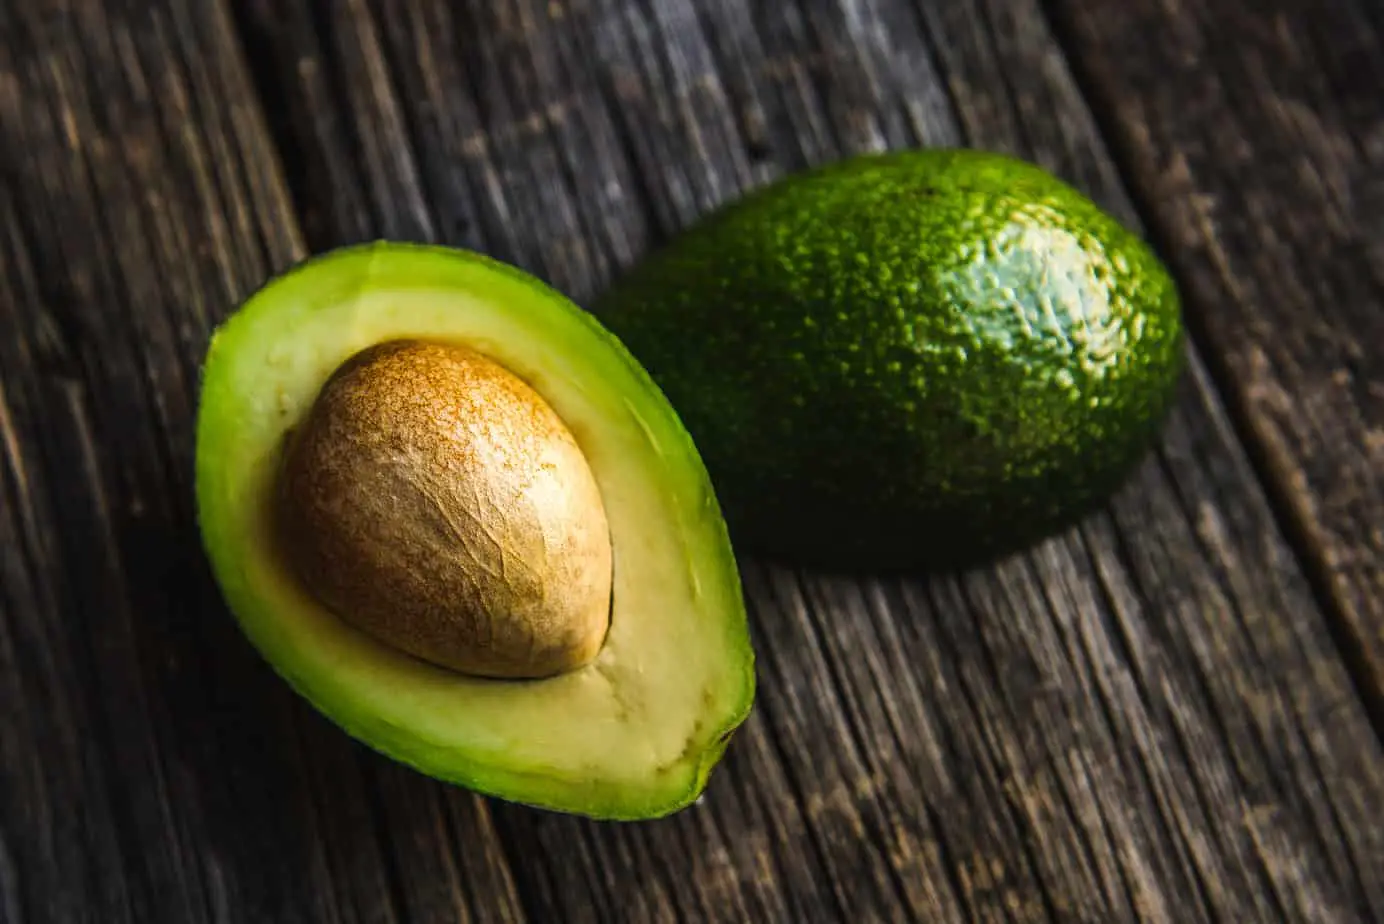 How to store avocado